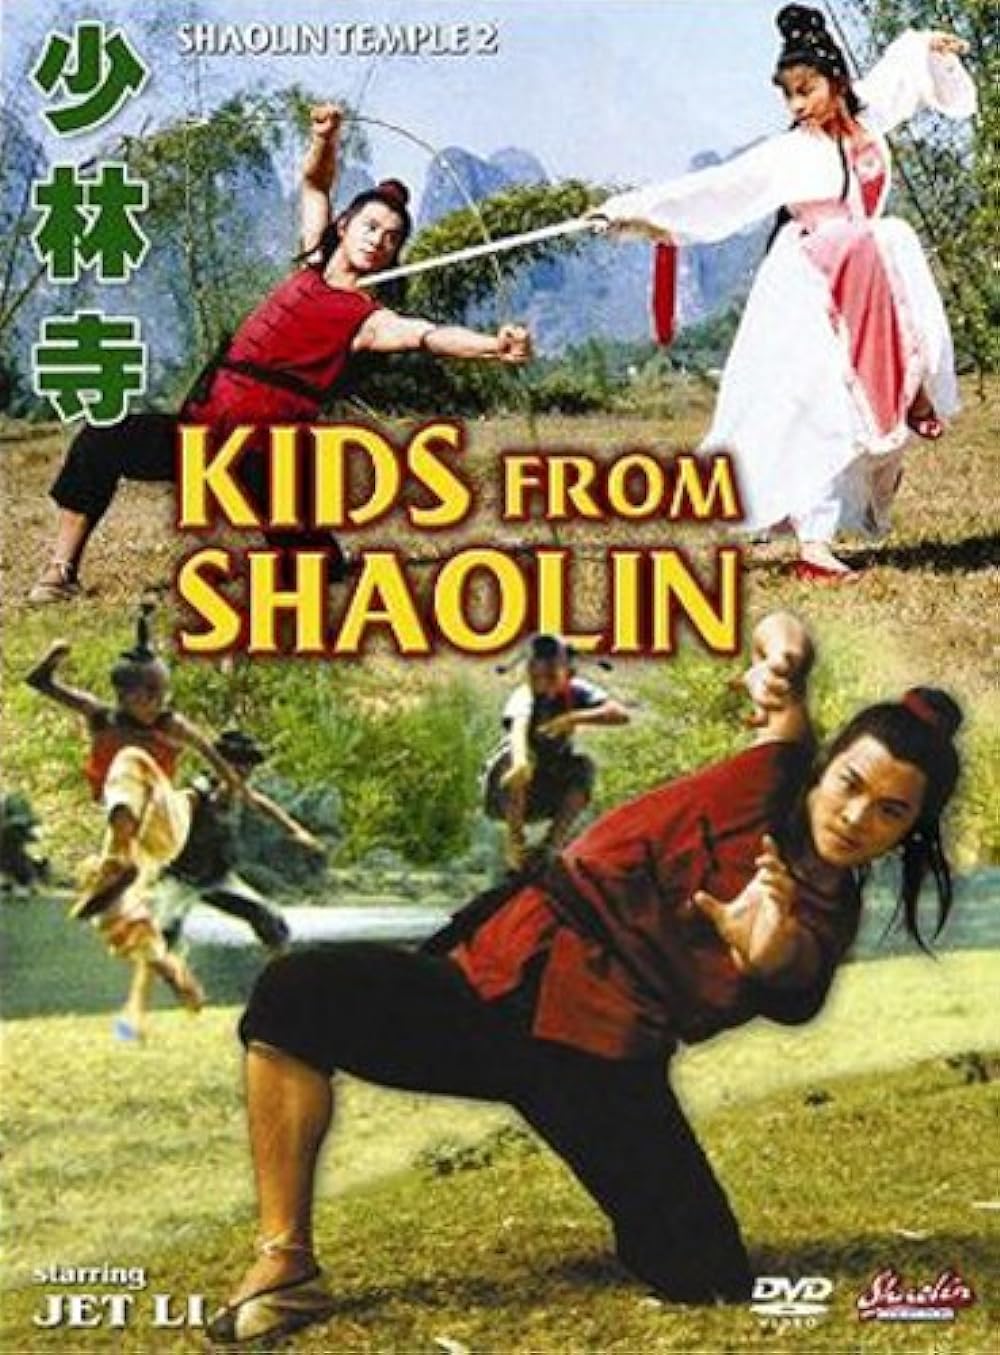 Thiếu Lâm Tự 2: Thiếu Lâm Tiểu Tử – Shaolin Temple 2: Kids From Shaolin (1984) Full HD Vietsub